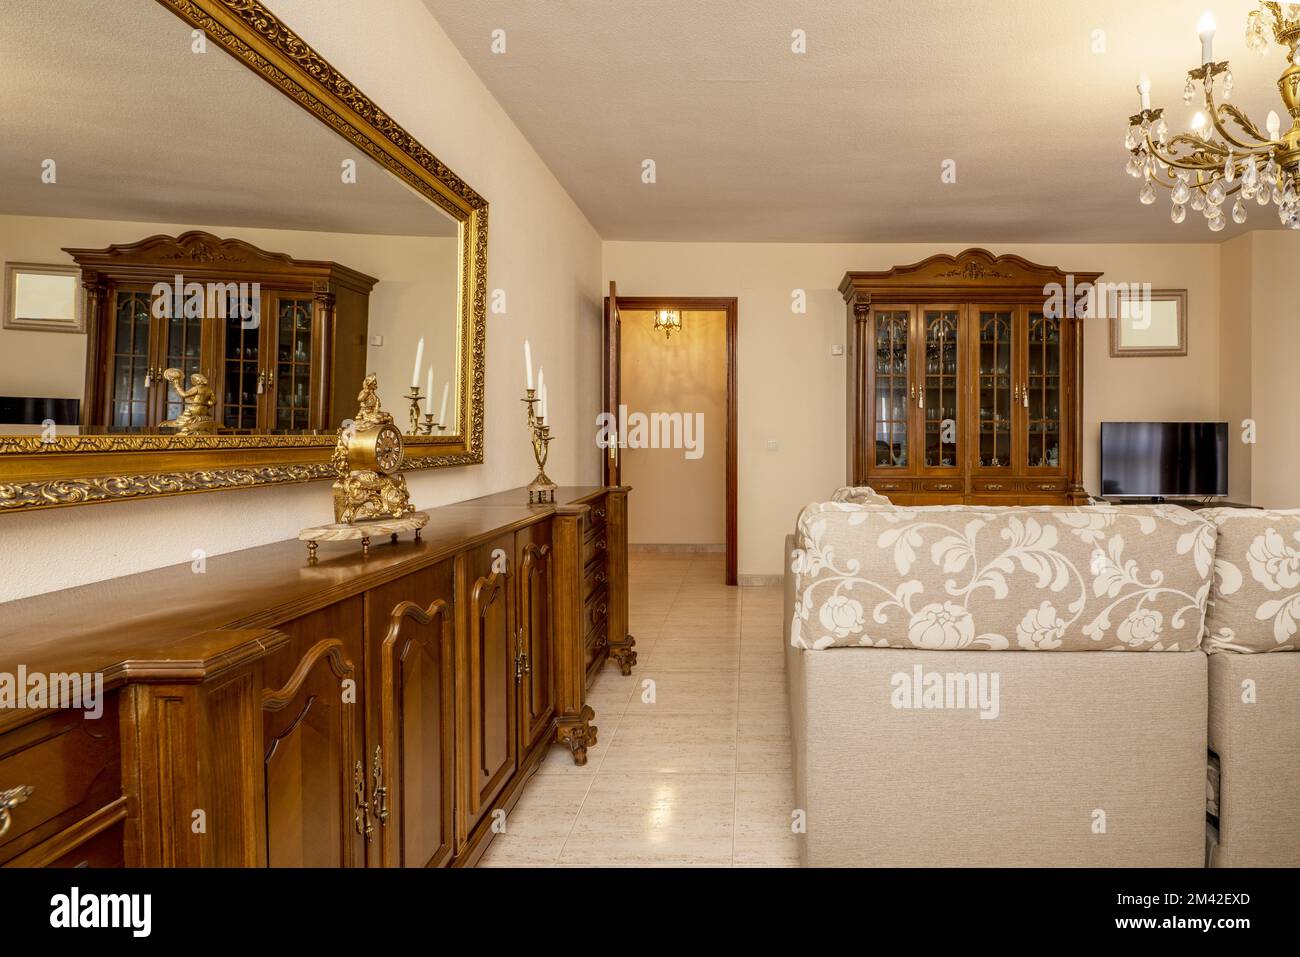 Salle de séjour rococo classique au mobilier en bois et miroirs encadrés de dorures Banque D'Images